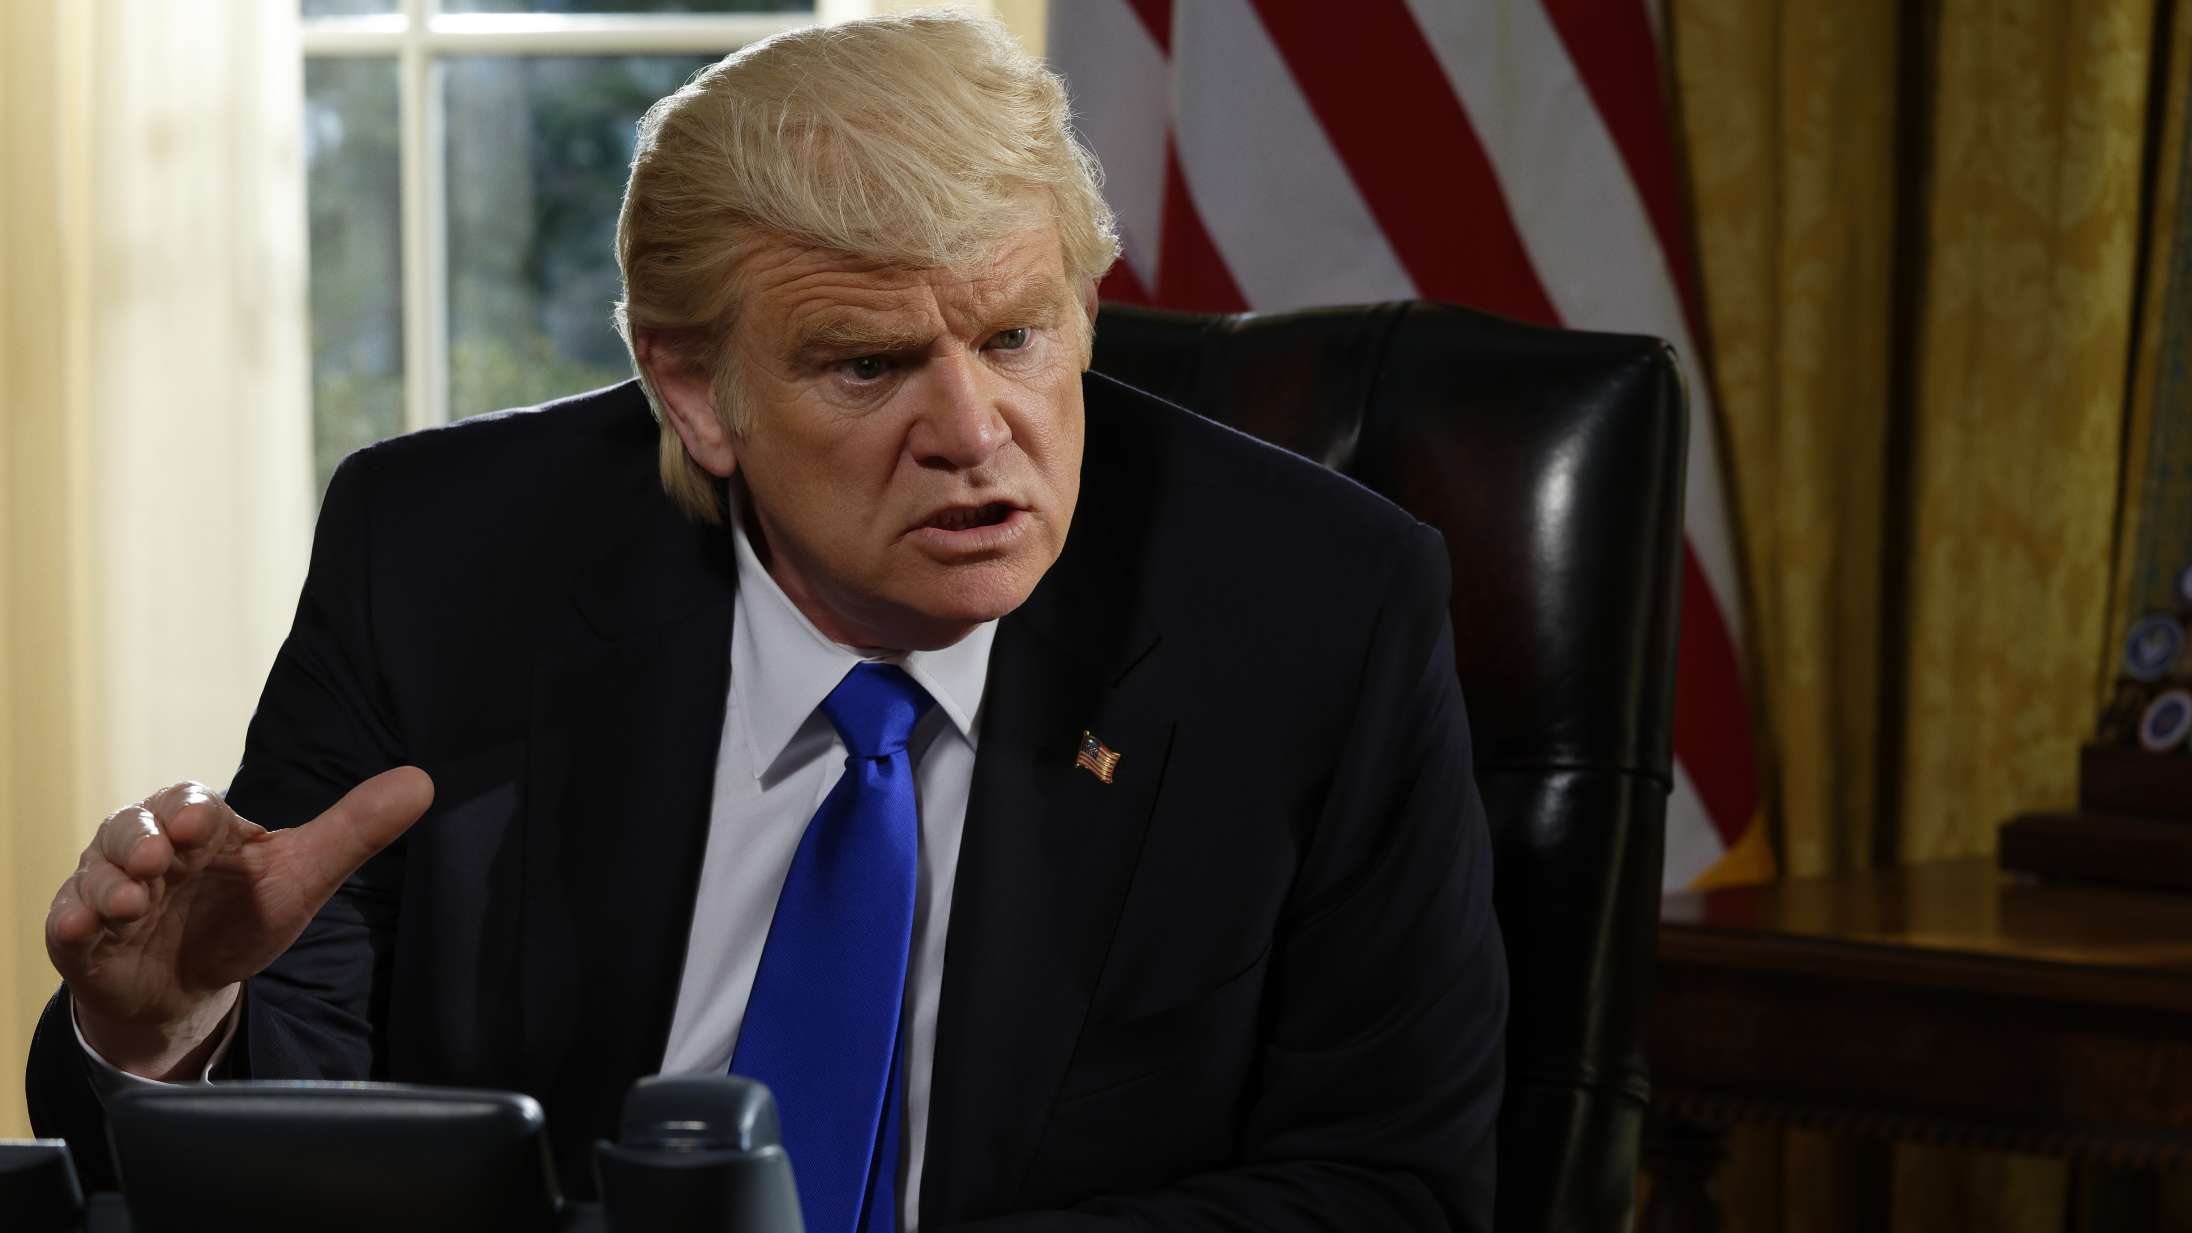 ’The Comey Rule’: Brendan Gleeson er overlegen som Trump i fremragende miniserie